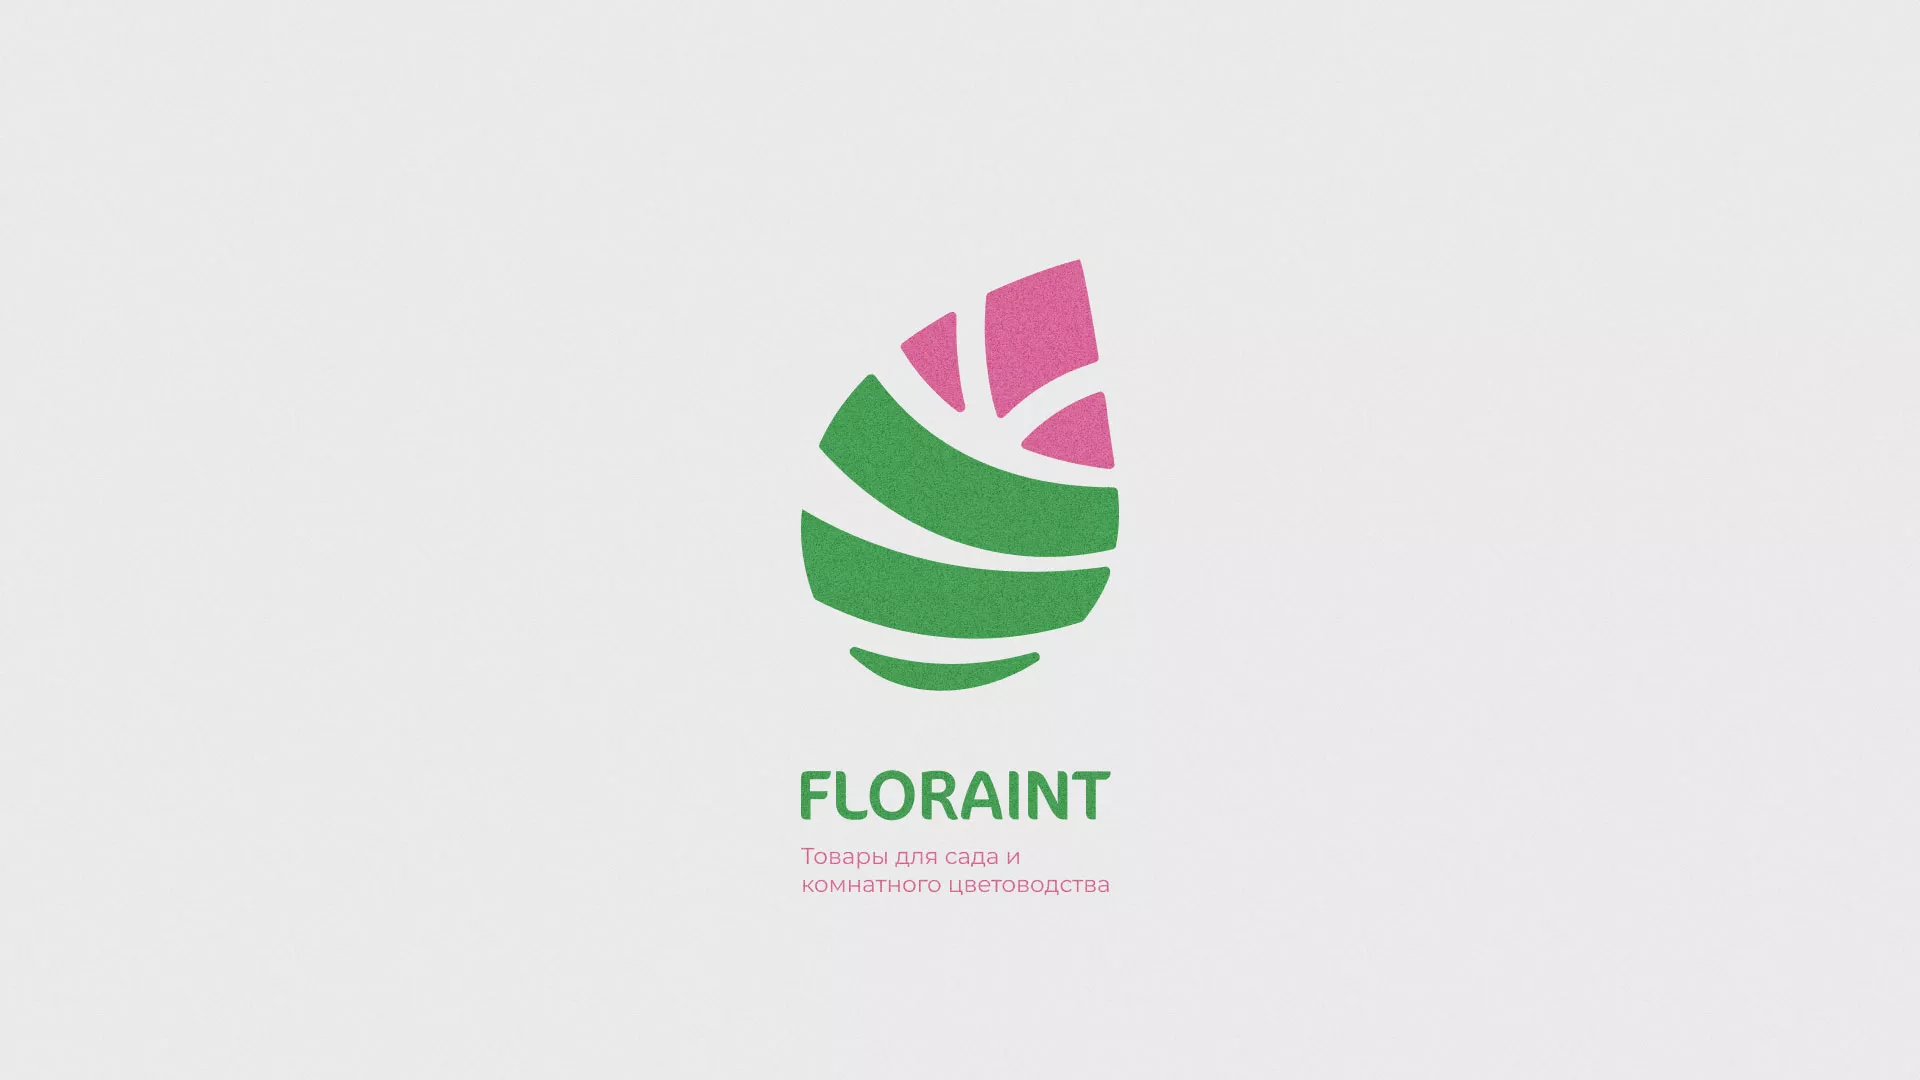 Разработка оформления профиля Instagram для магазина «Floraint» в Ломоносове